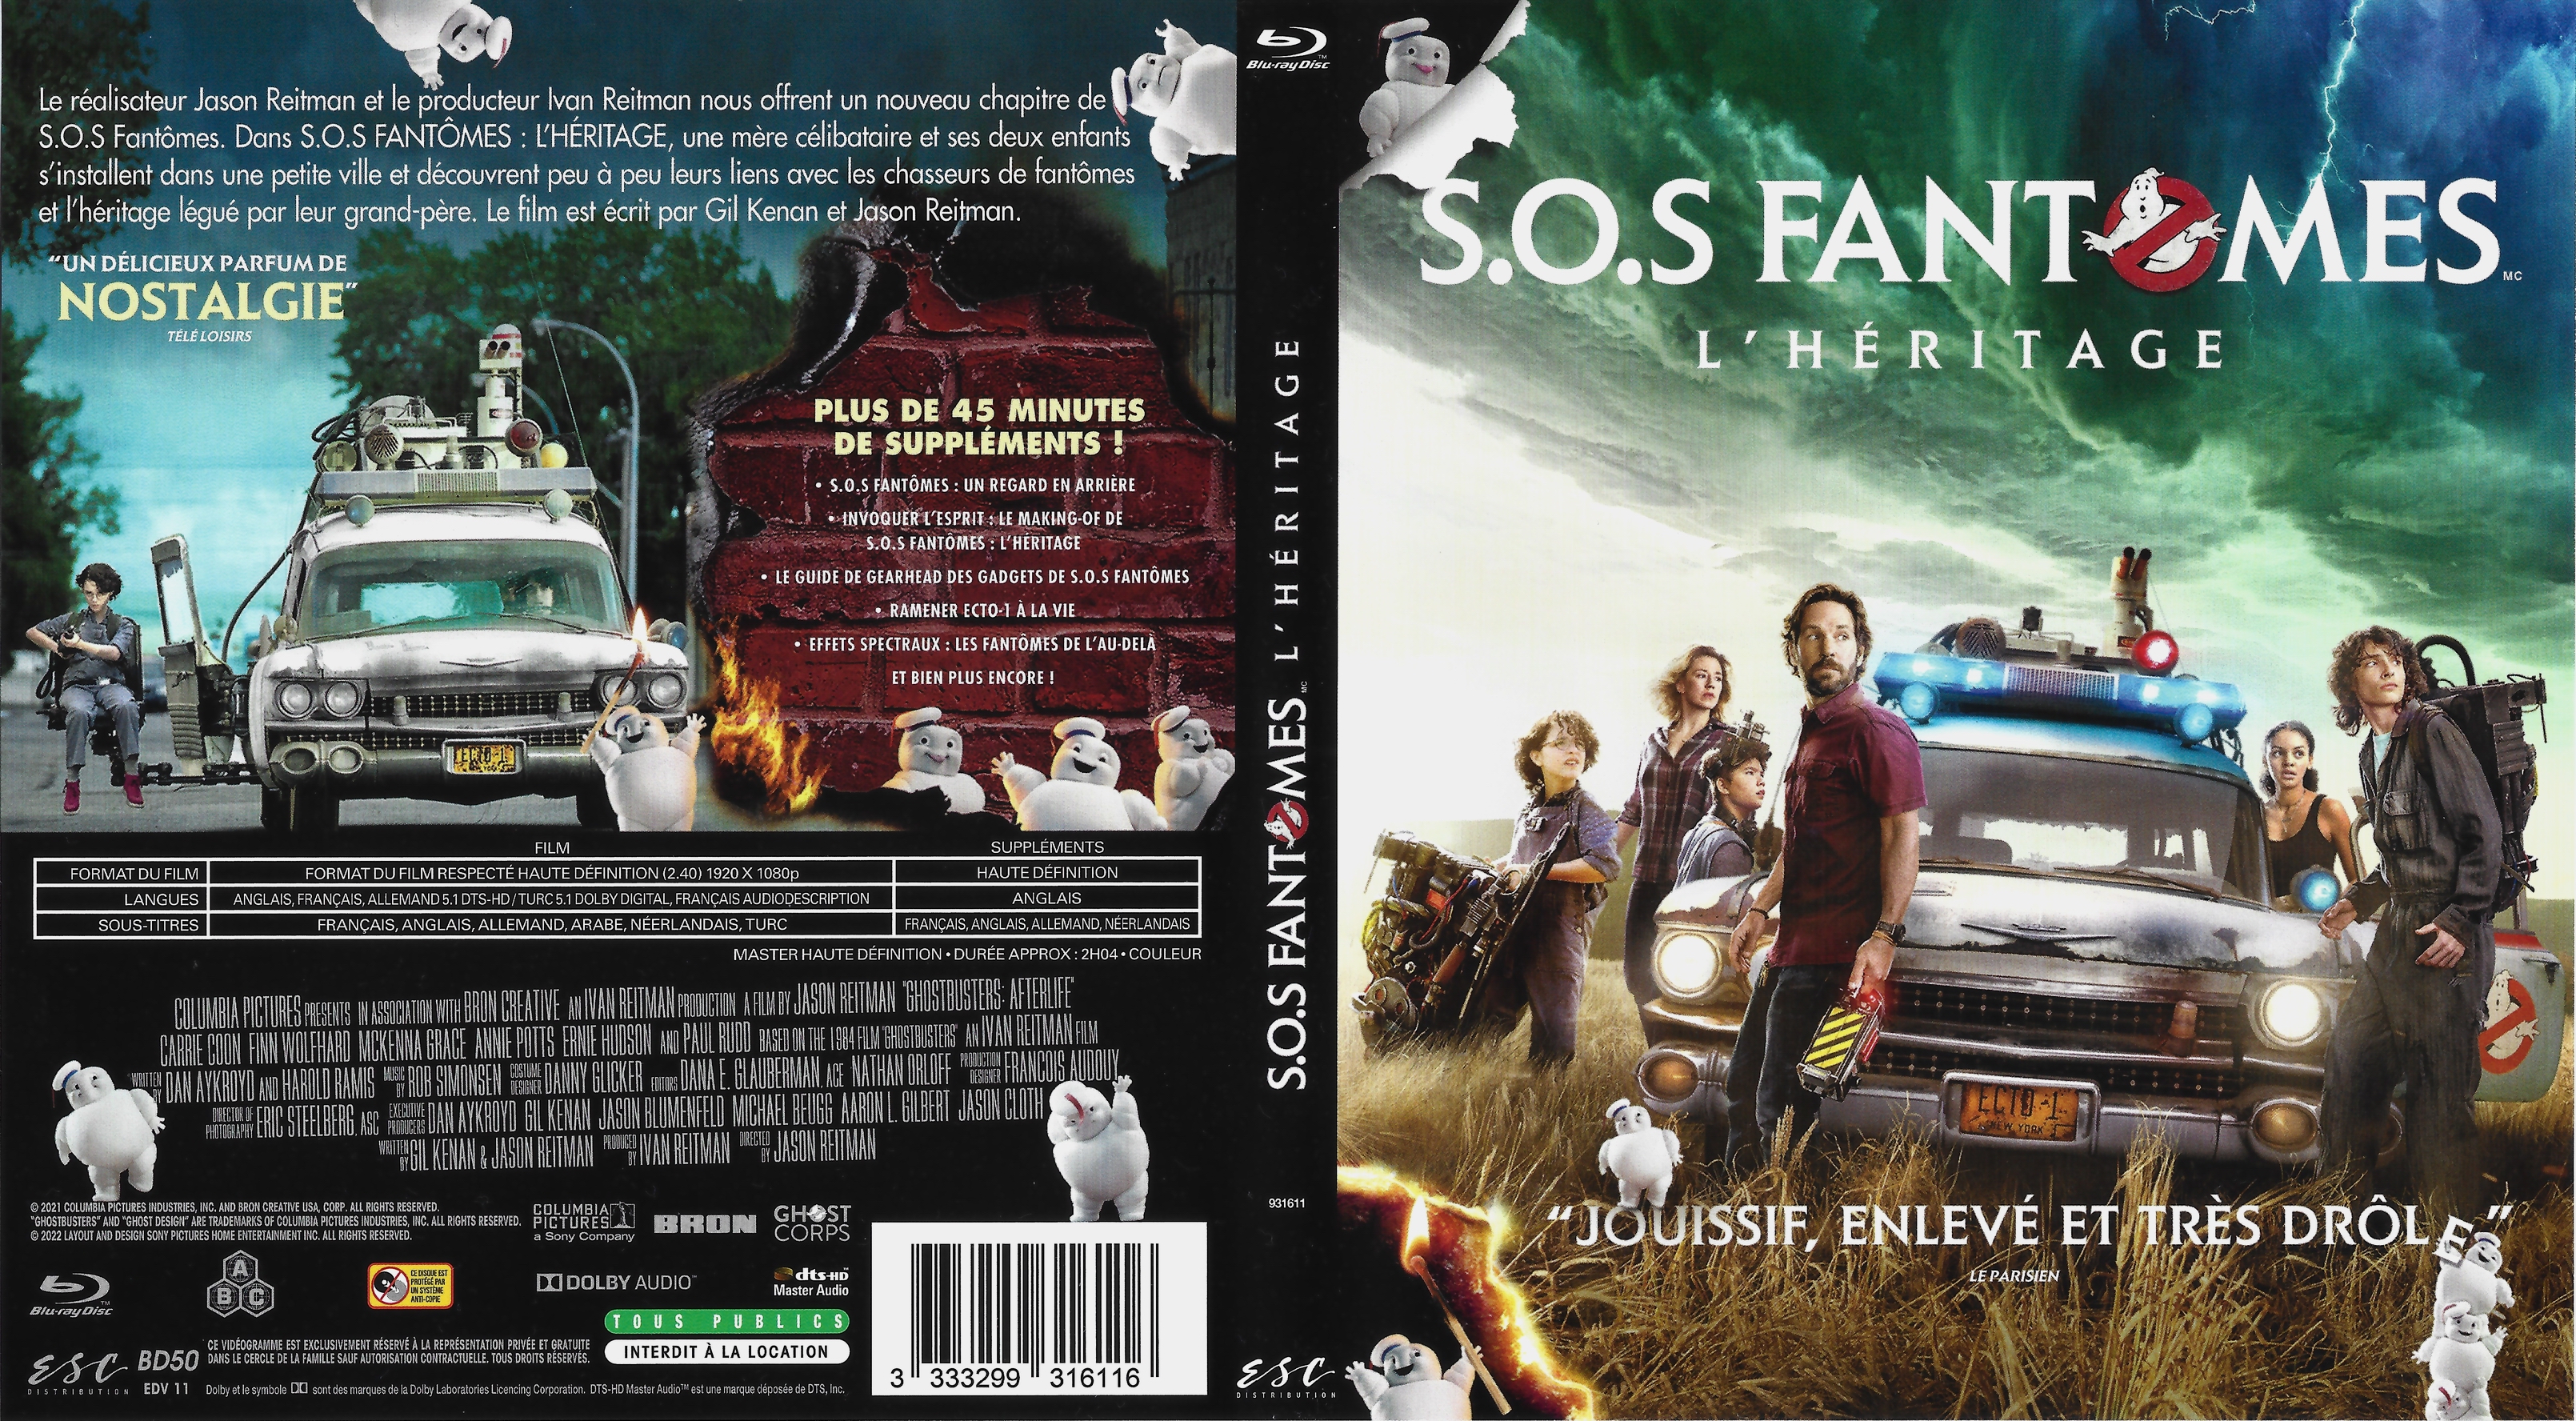 Jaquette DVD SOS Fantomes L